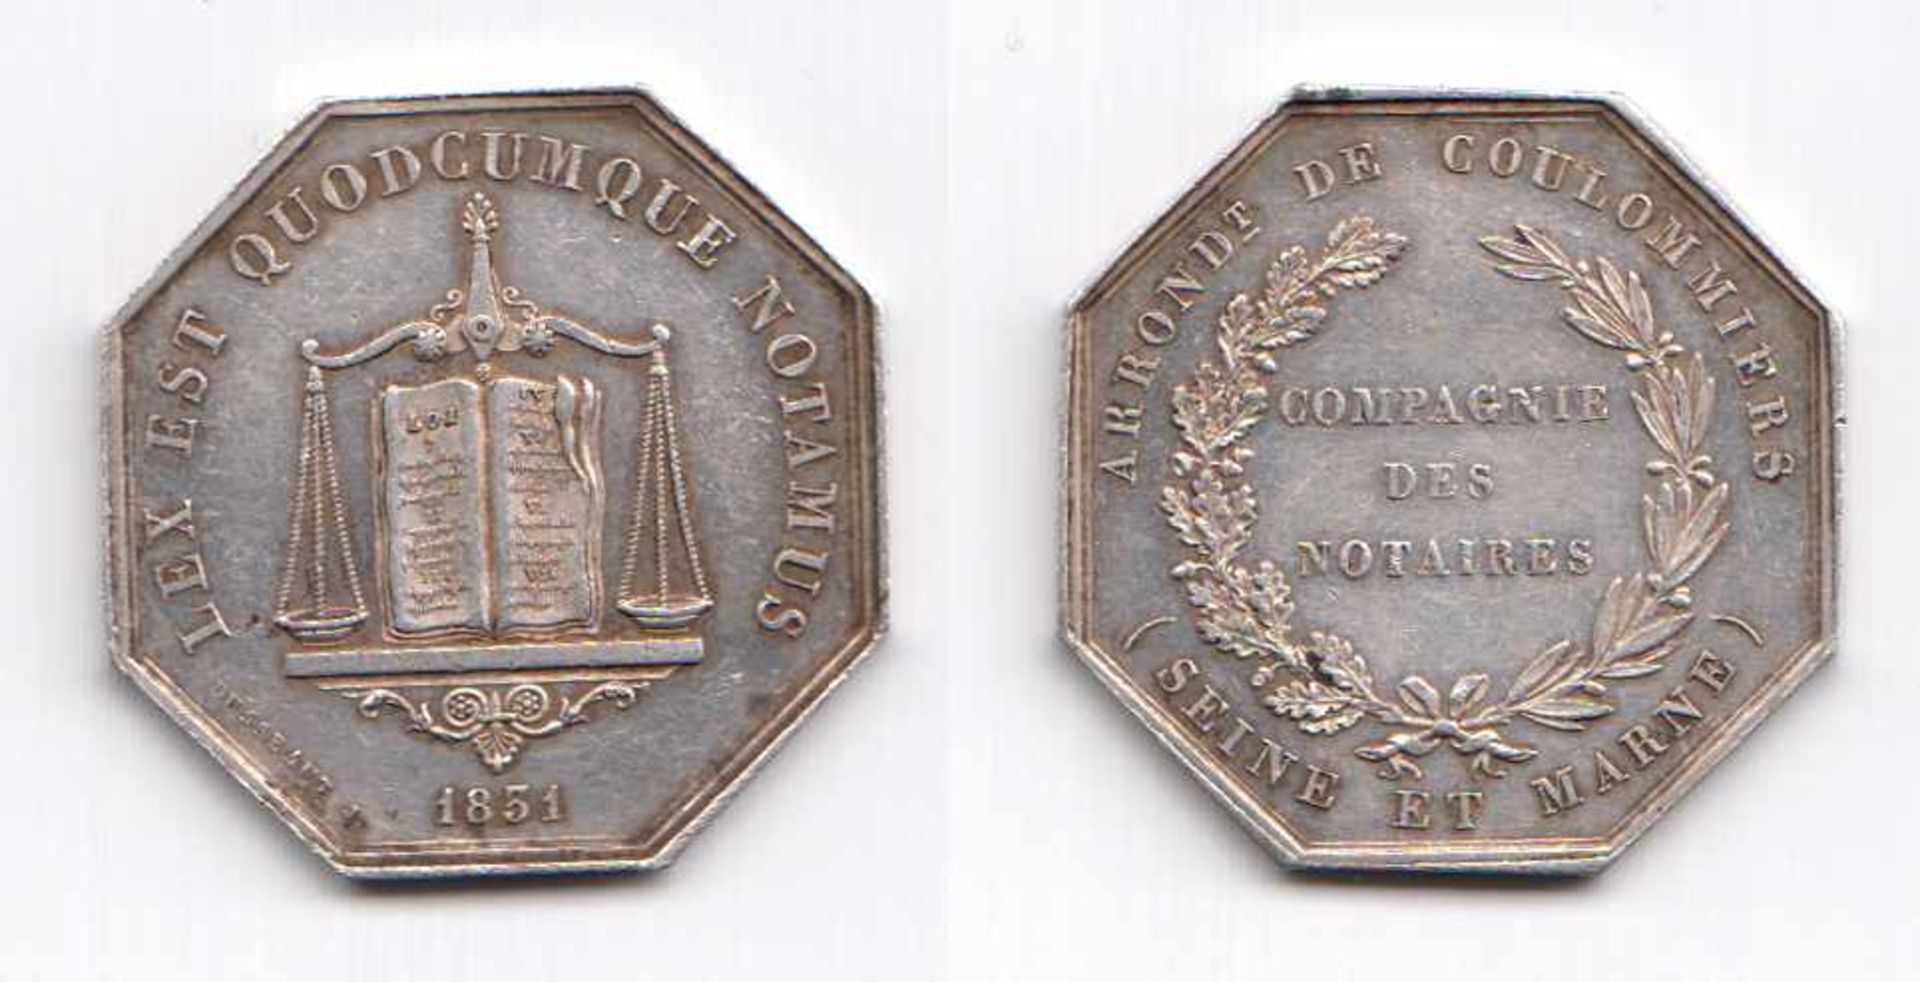 8-eckige Silbermedaille Compagnie Des Notaires 1831. Vs "Arrondt De Coulommiers (Seine Et